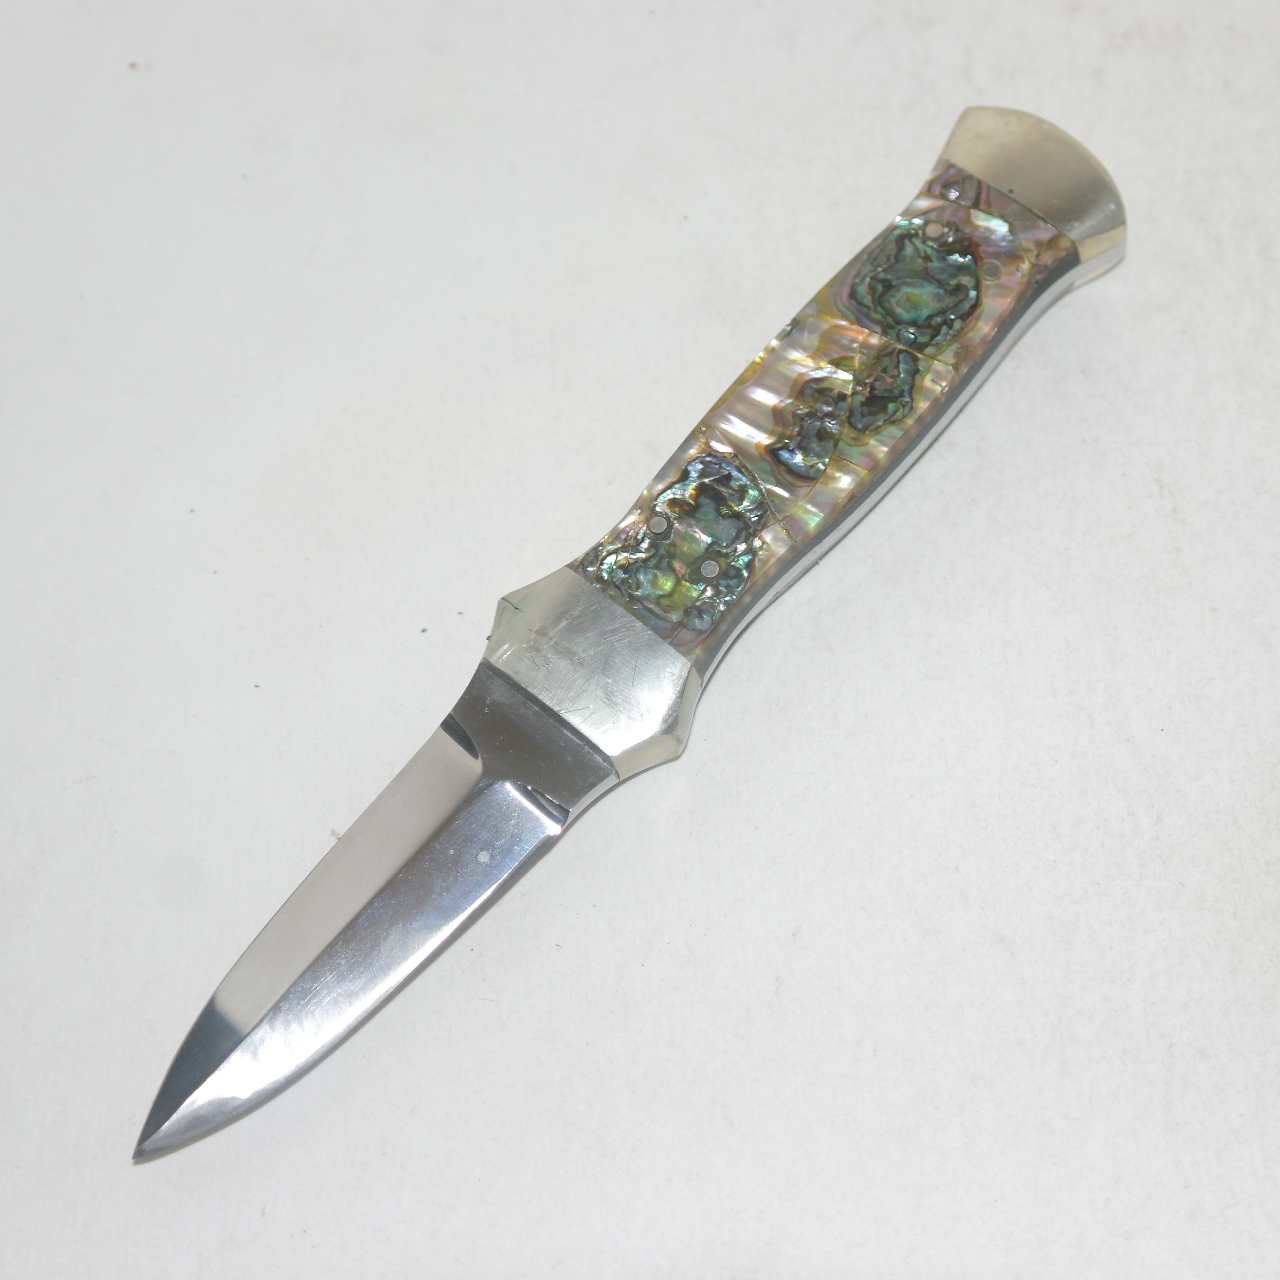 묵직한 금속재질에 자개빛장식이된 등산용 칼